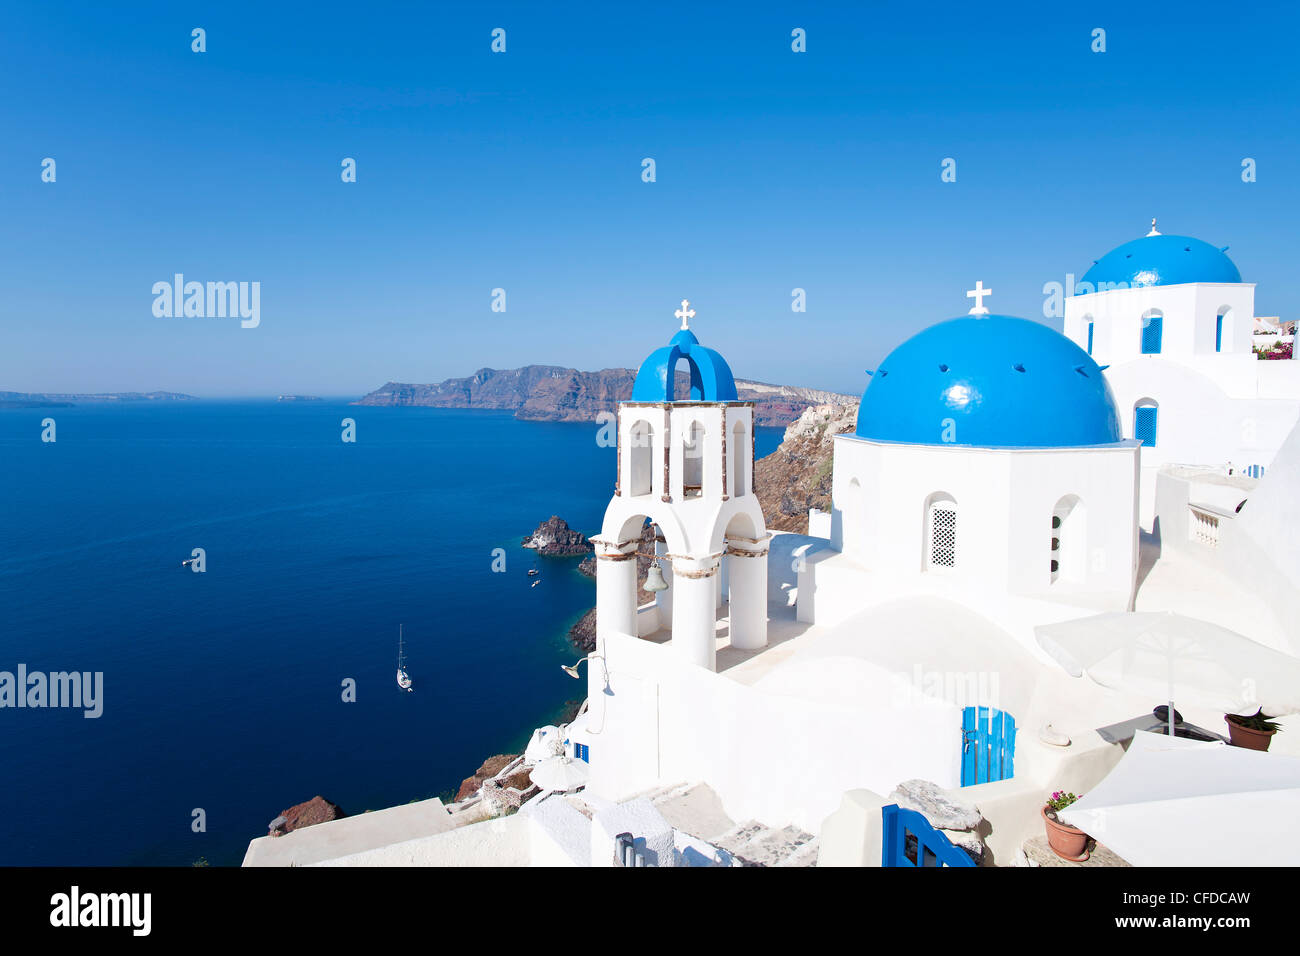 Églises au dôme bleu dans le village de Oia, Santorin (thira), Cyclades, Mer Égée, îles grecques, Grèce, Europe Banque D'Images